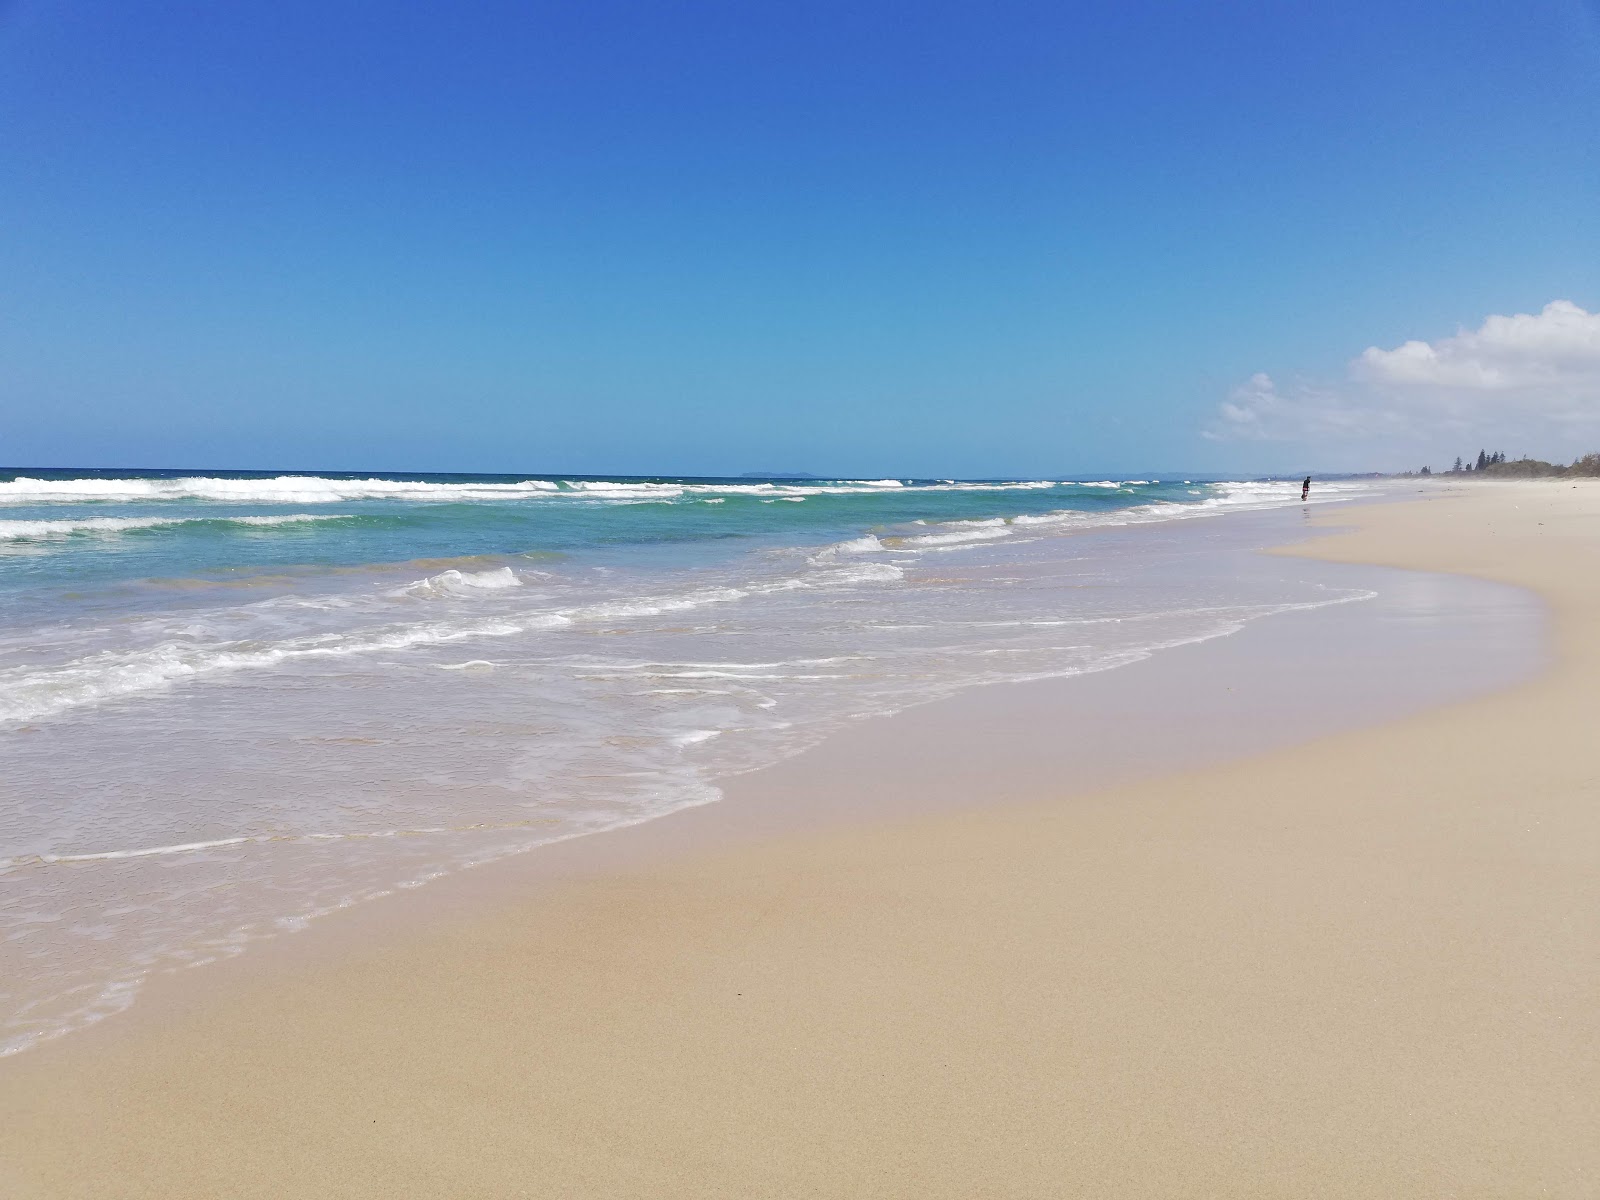 Zdjęcie South Golden Beach z powierzchnią jasny piasek